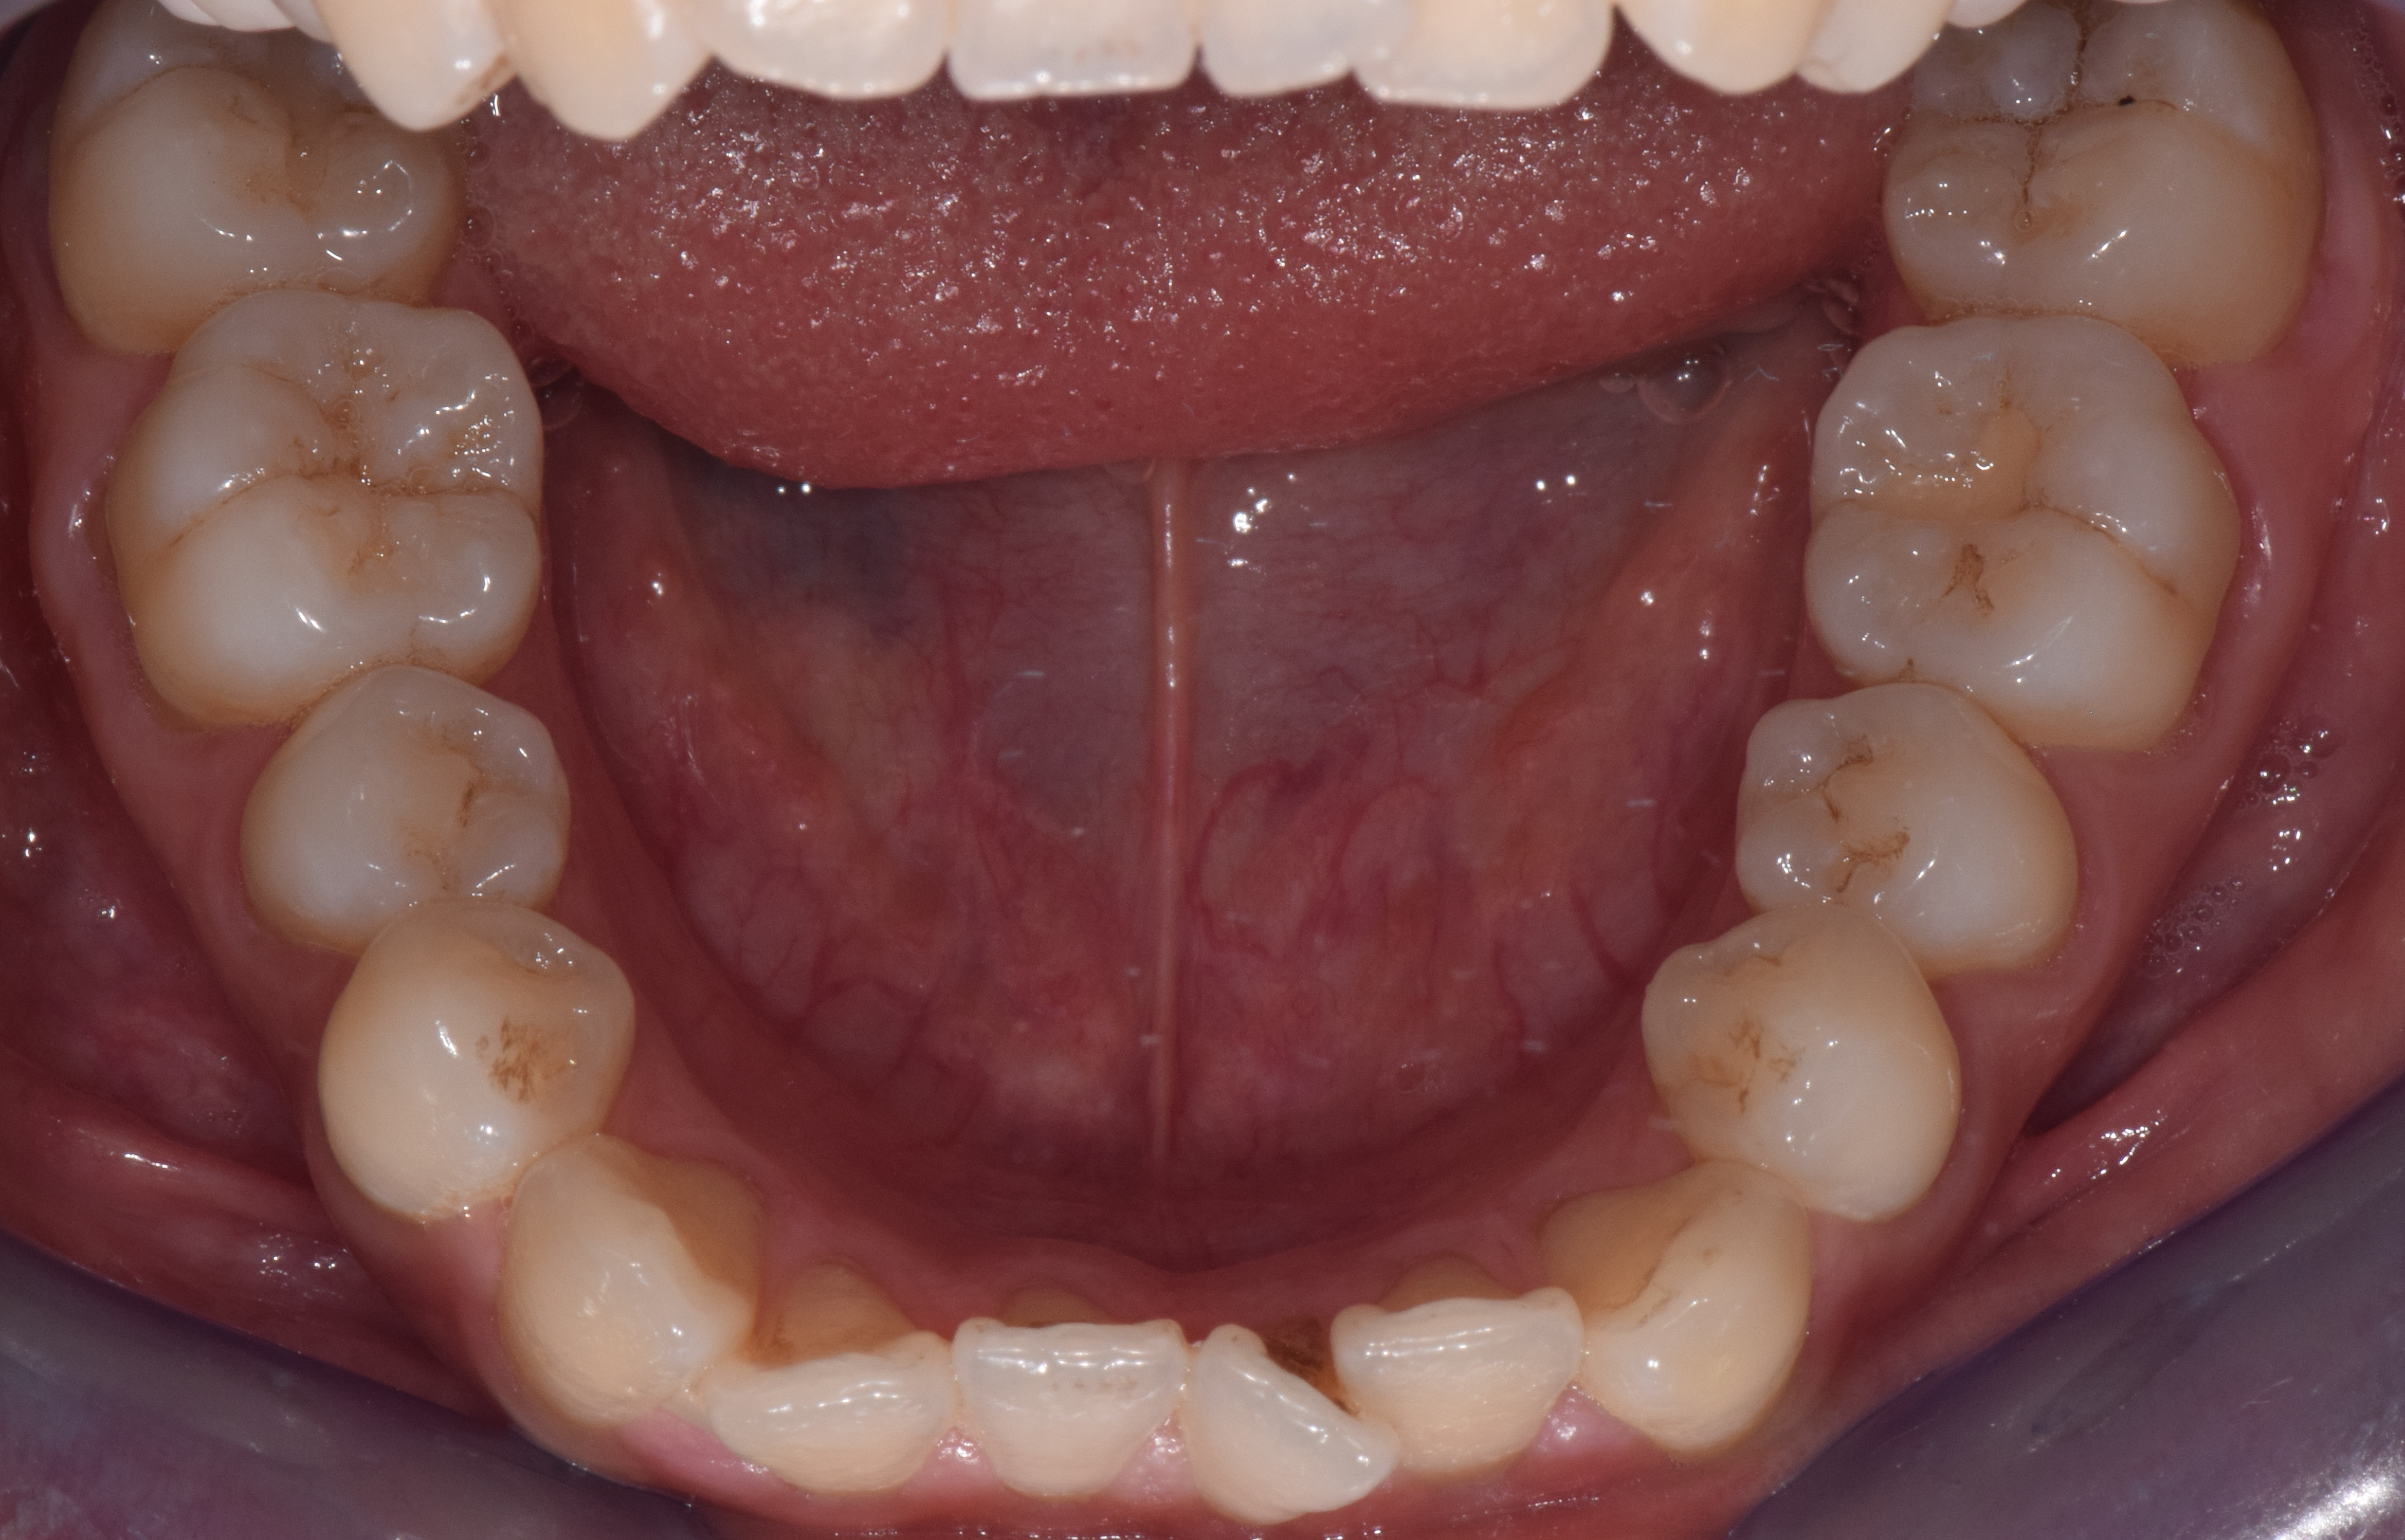 1,中切牙垂直向开颌1mm,侧切牙垂直向开颌3mm;2,上颌相对下颌偏窄